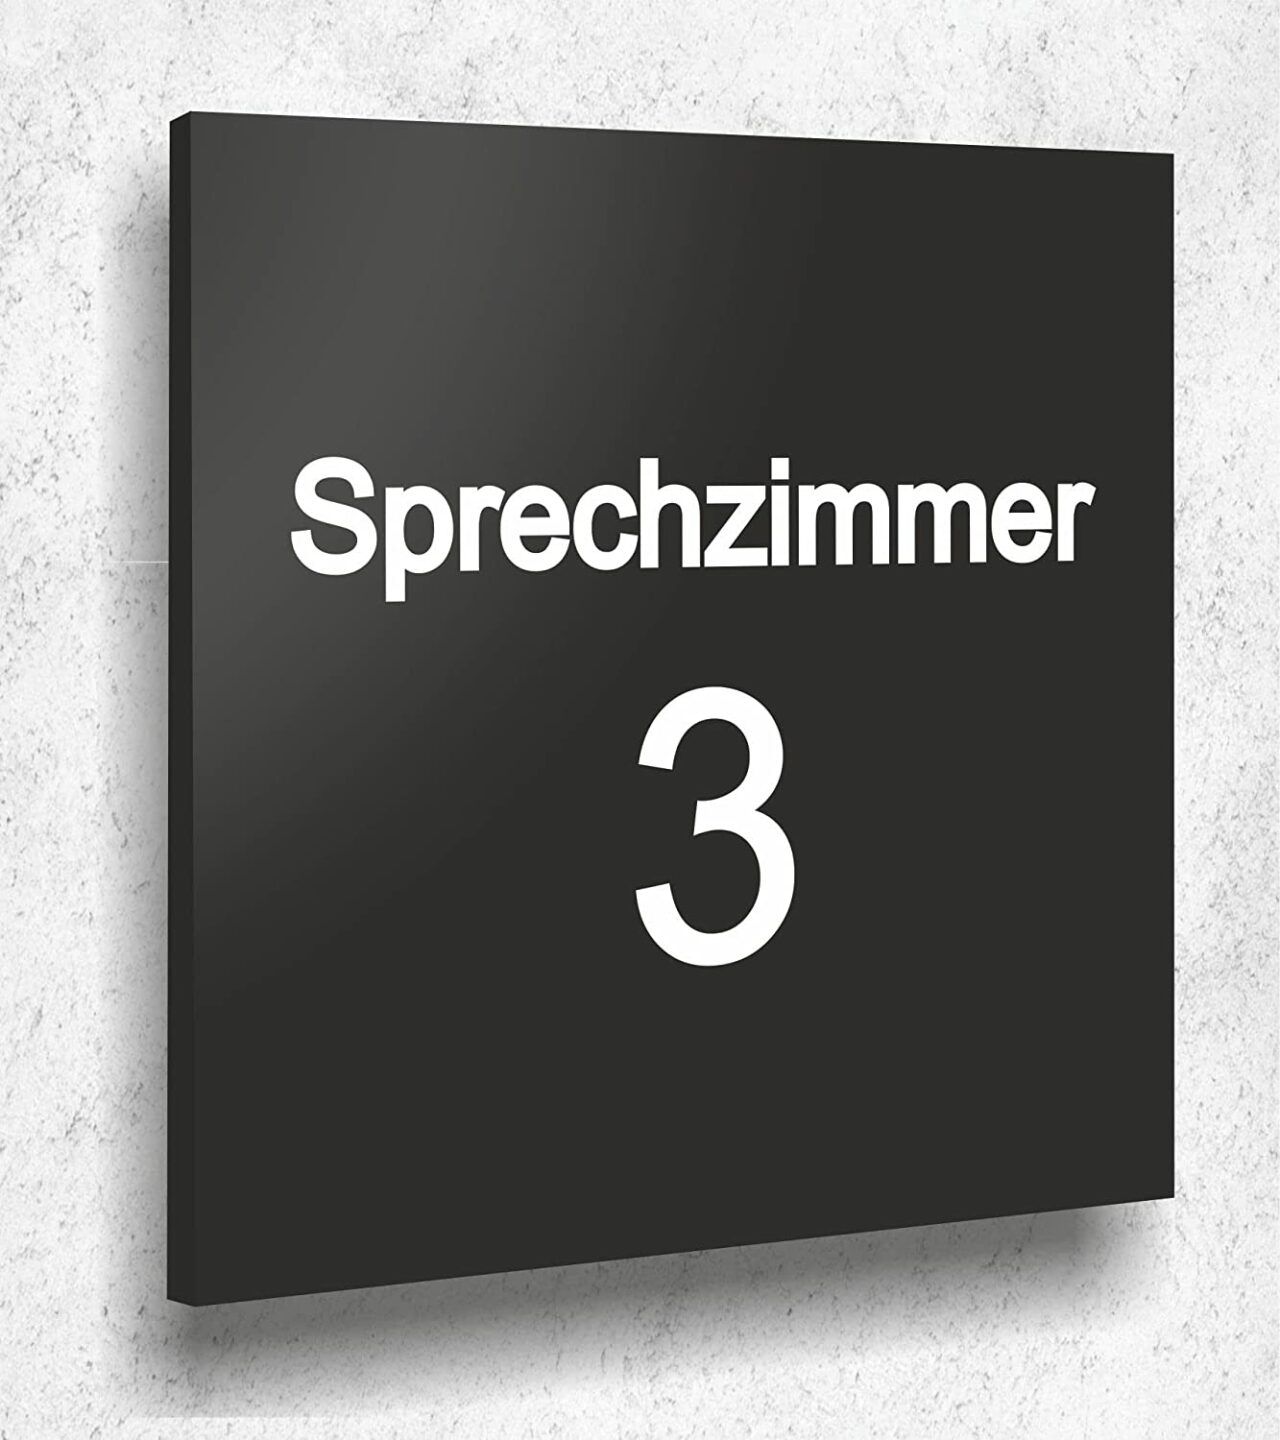 Türschild SPRECHZIMMER 3 Schild Schwarz Matt UV Druck 12 x 12cm - 3mm Acrylglas - Made in Germany Art.Nr. A 2072